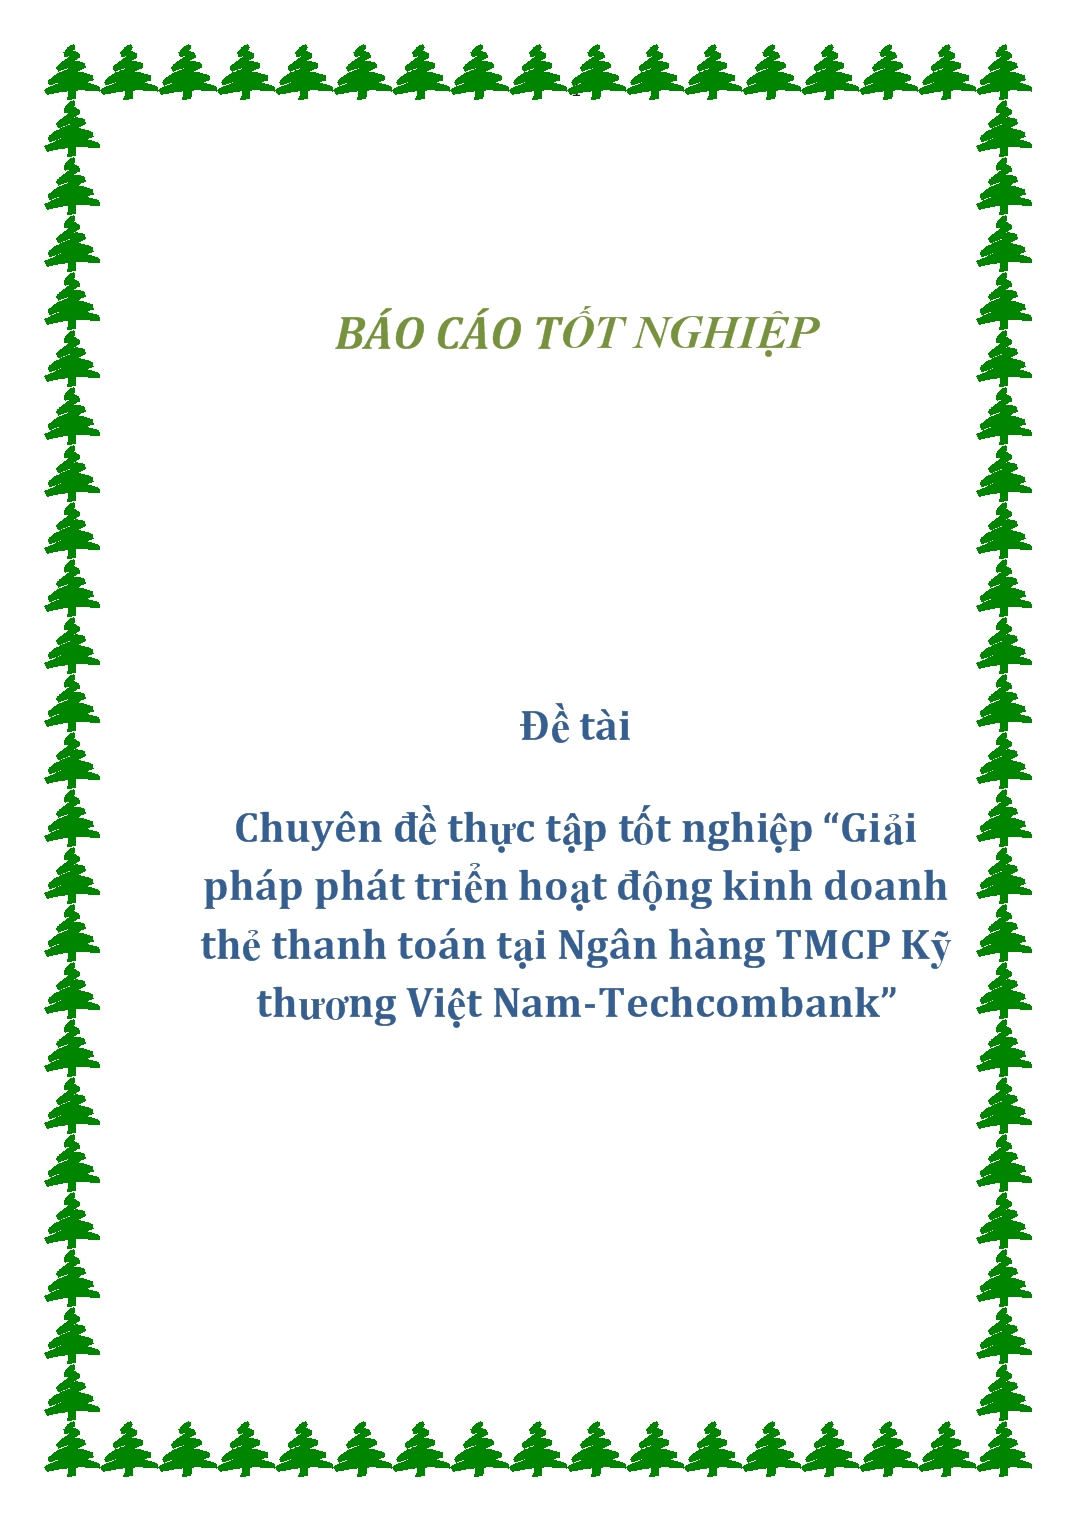 Chuyên đề Giải pháp phát triển hoạt động kinh doanh thẻ thanh toán tại ngân hàng TMCP Kỹ thương Việt Nam TechcomBank trang 1